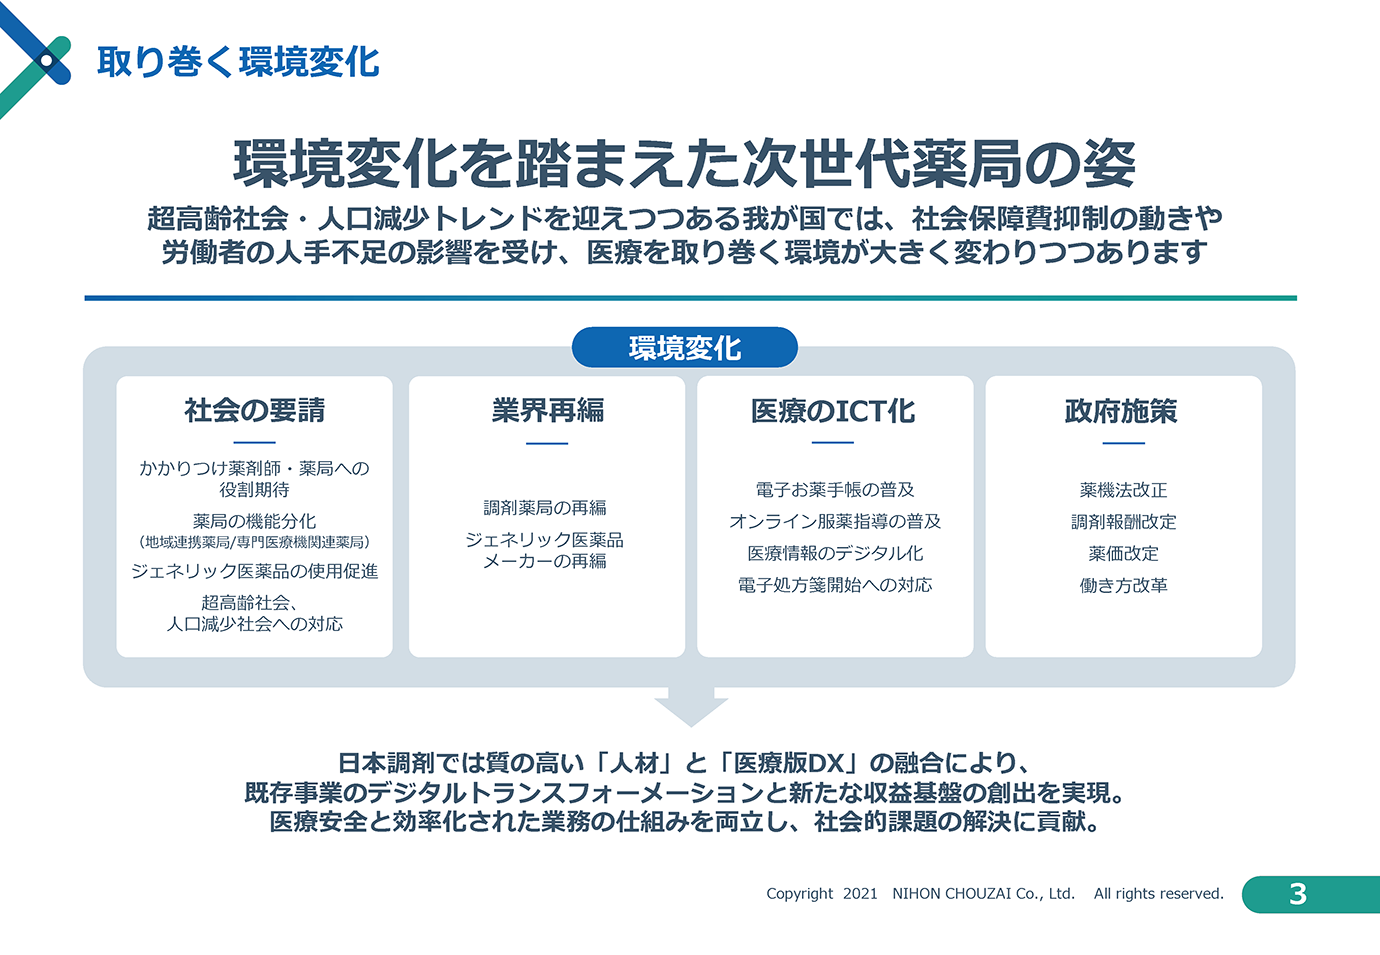 日本調剤株式会社2021年8月発表「DX戦略」